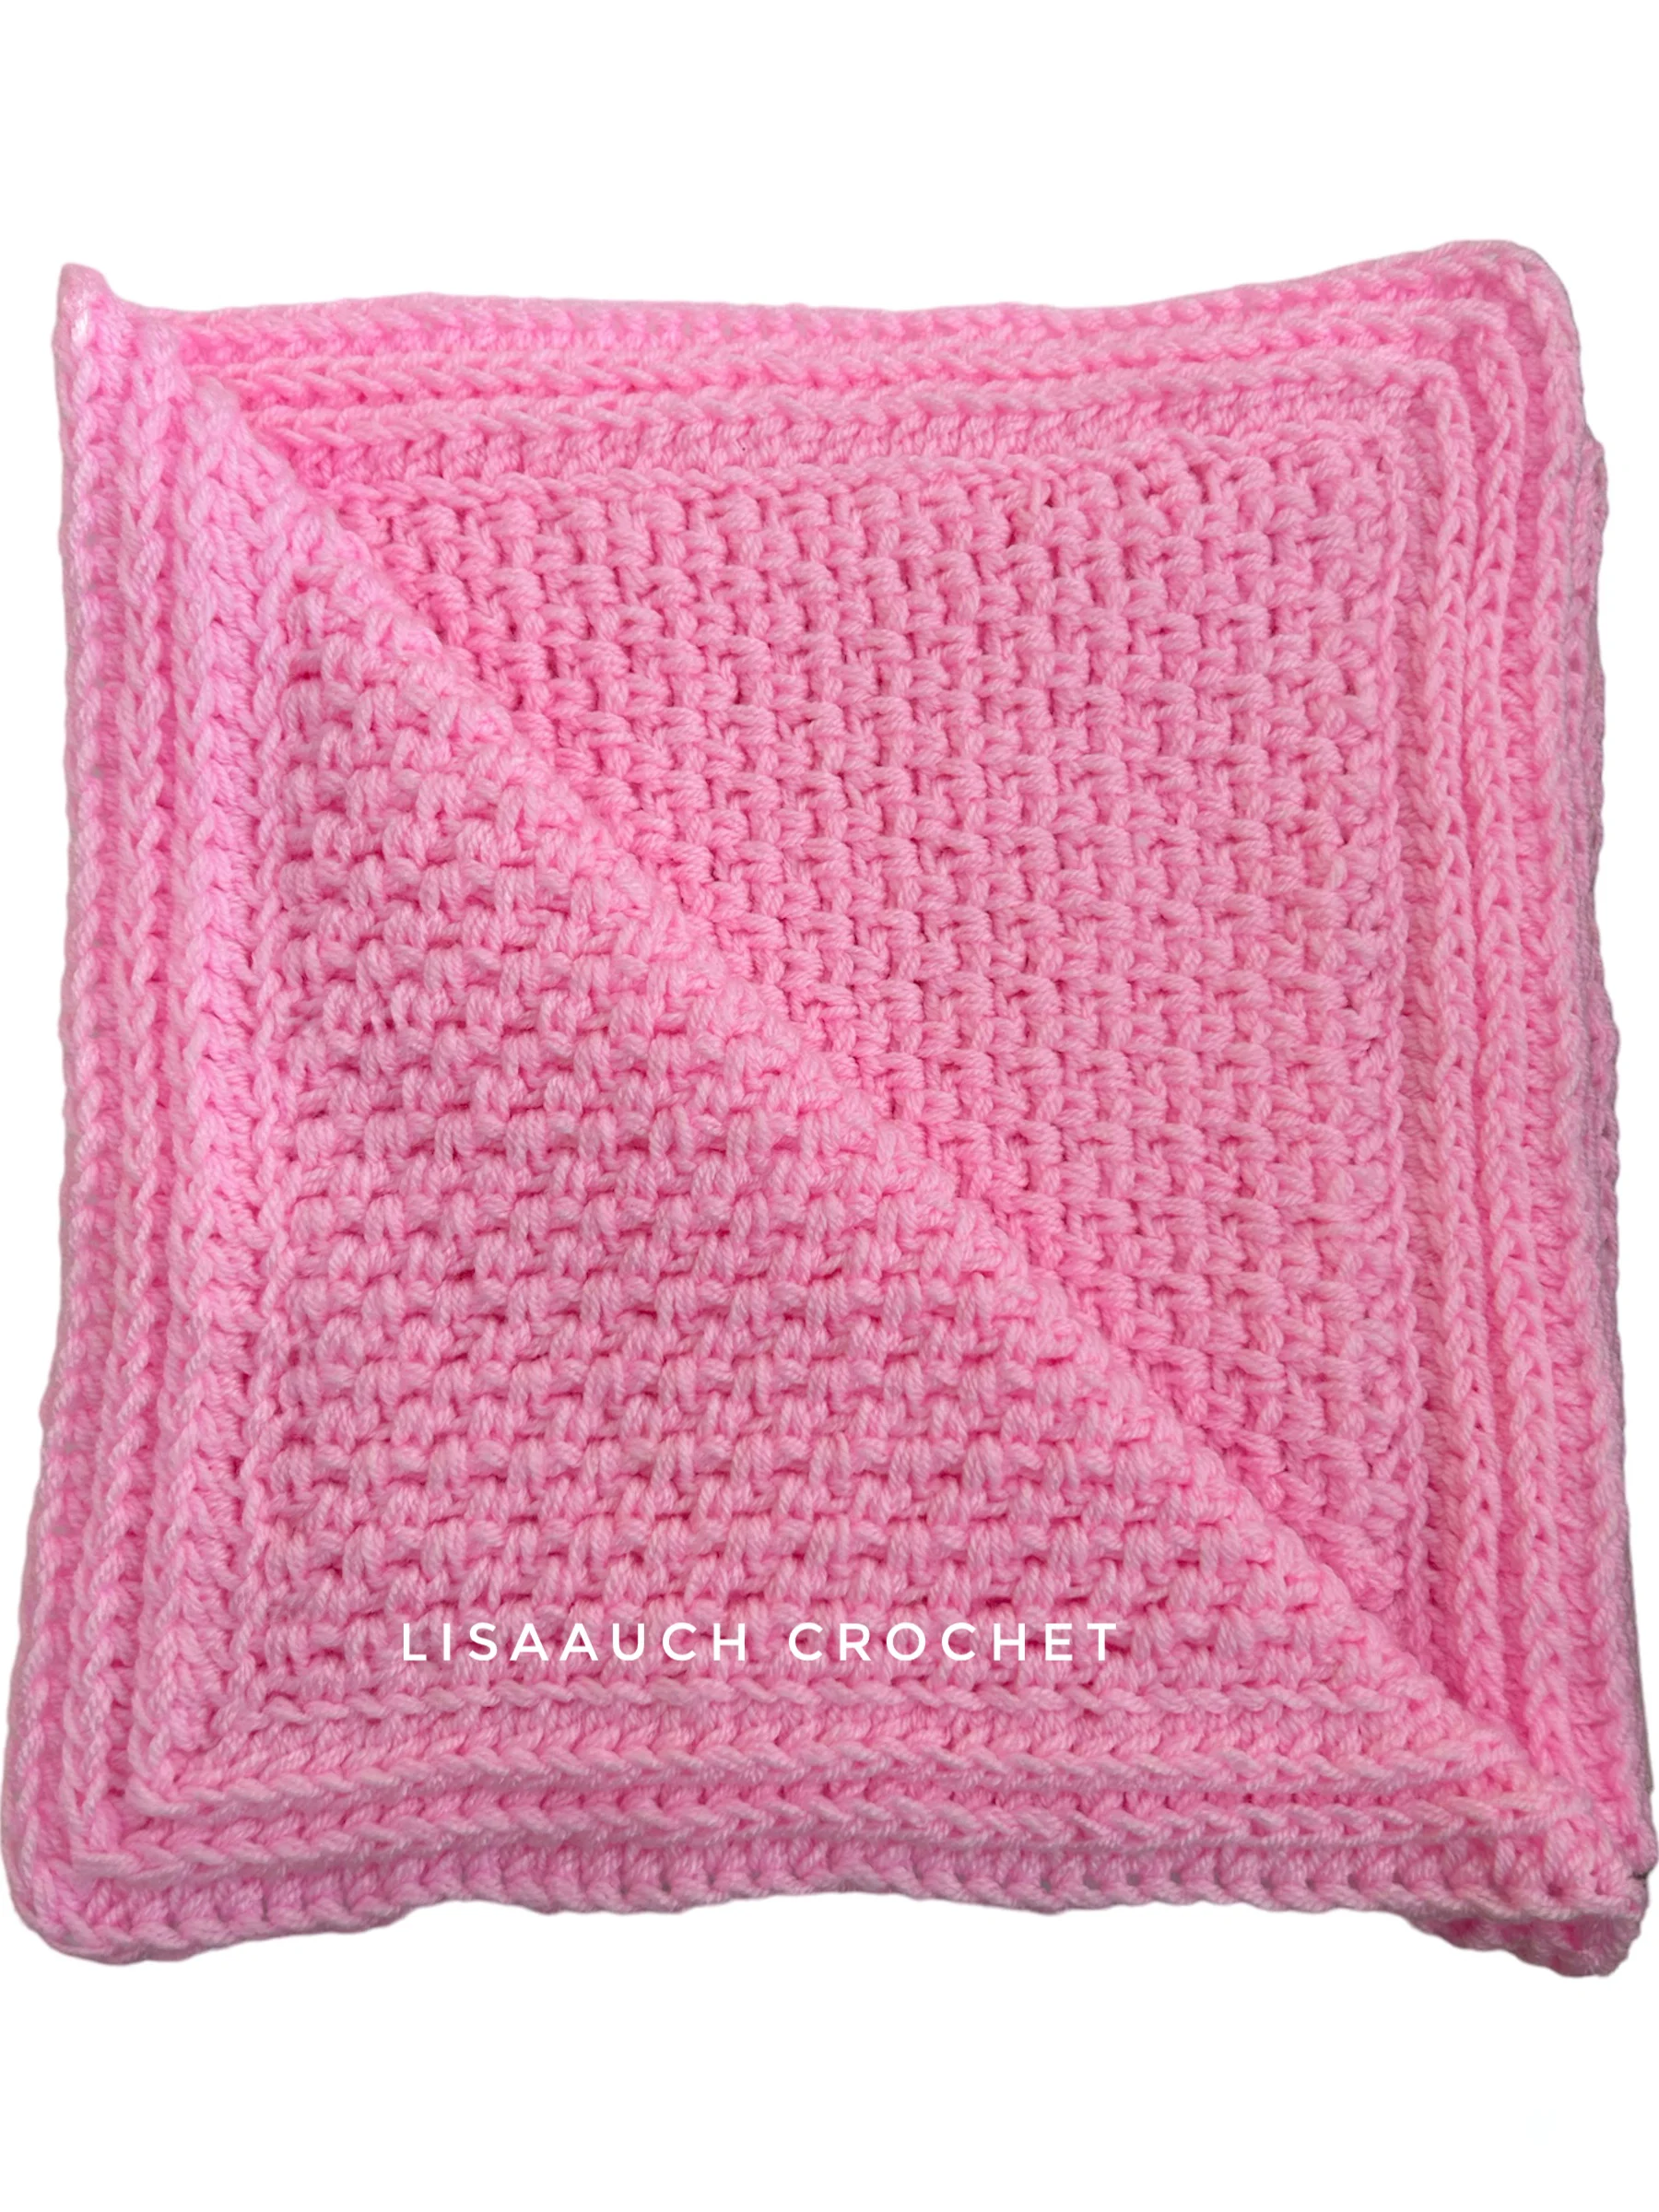 easy baby blanket crochet pattern free